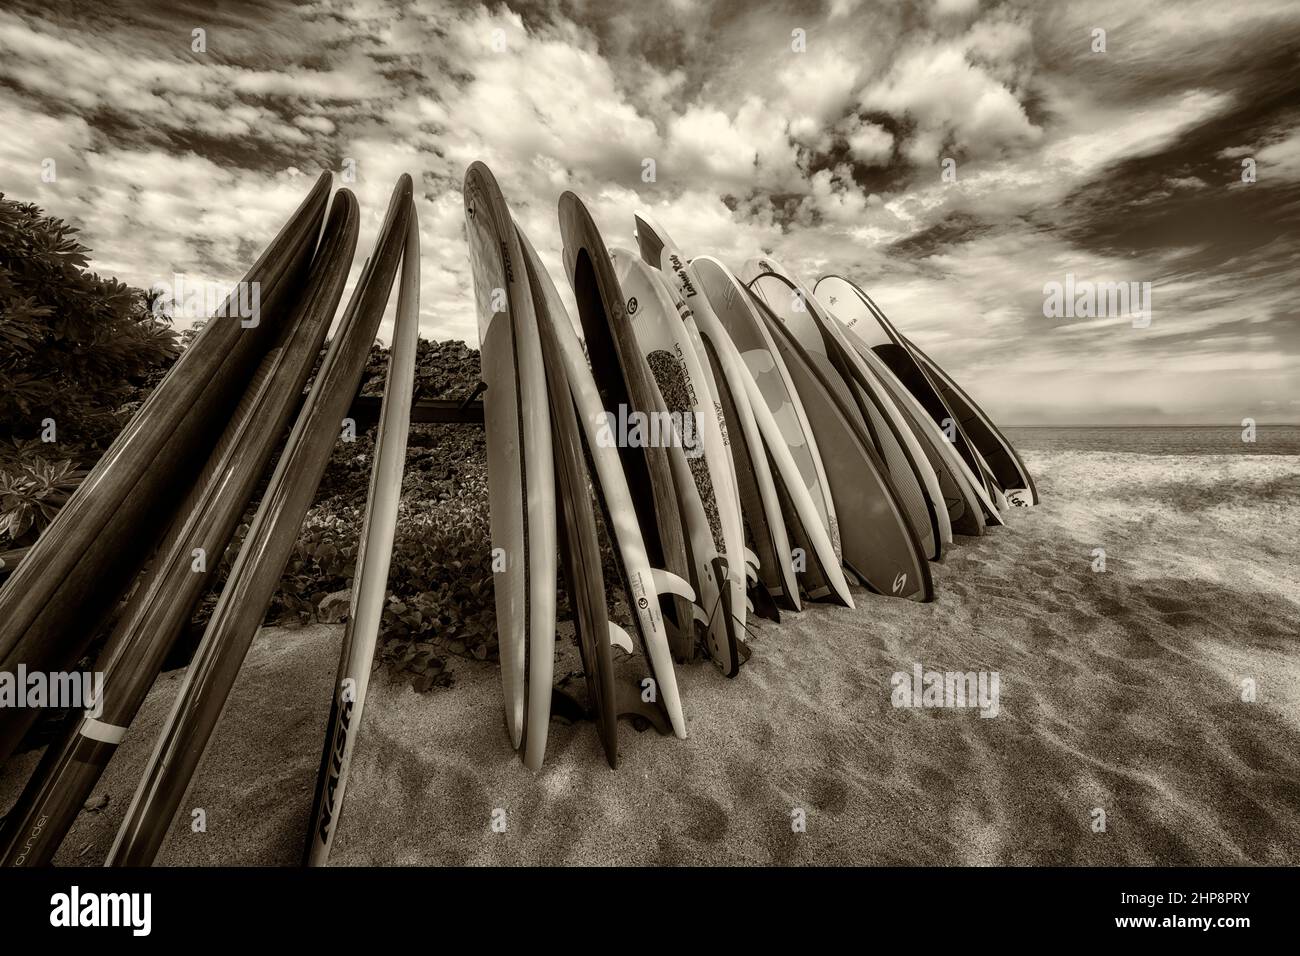 Planches de surf sur la plage. Hawaï, la Grande île Banque D'Images